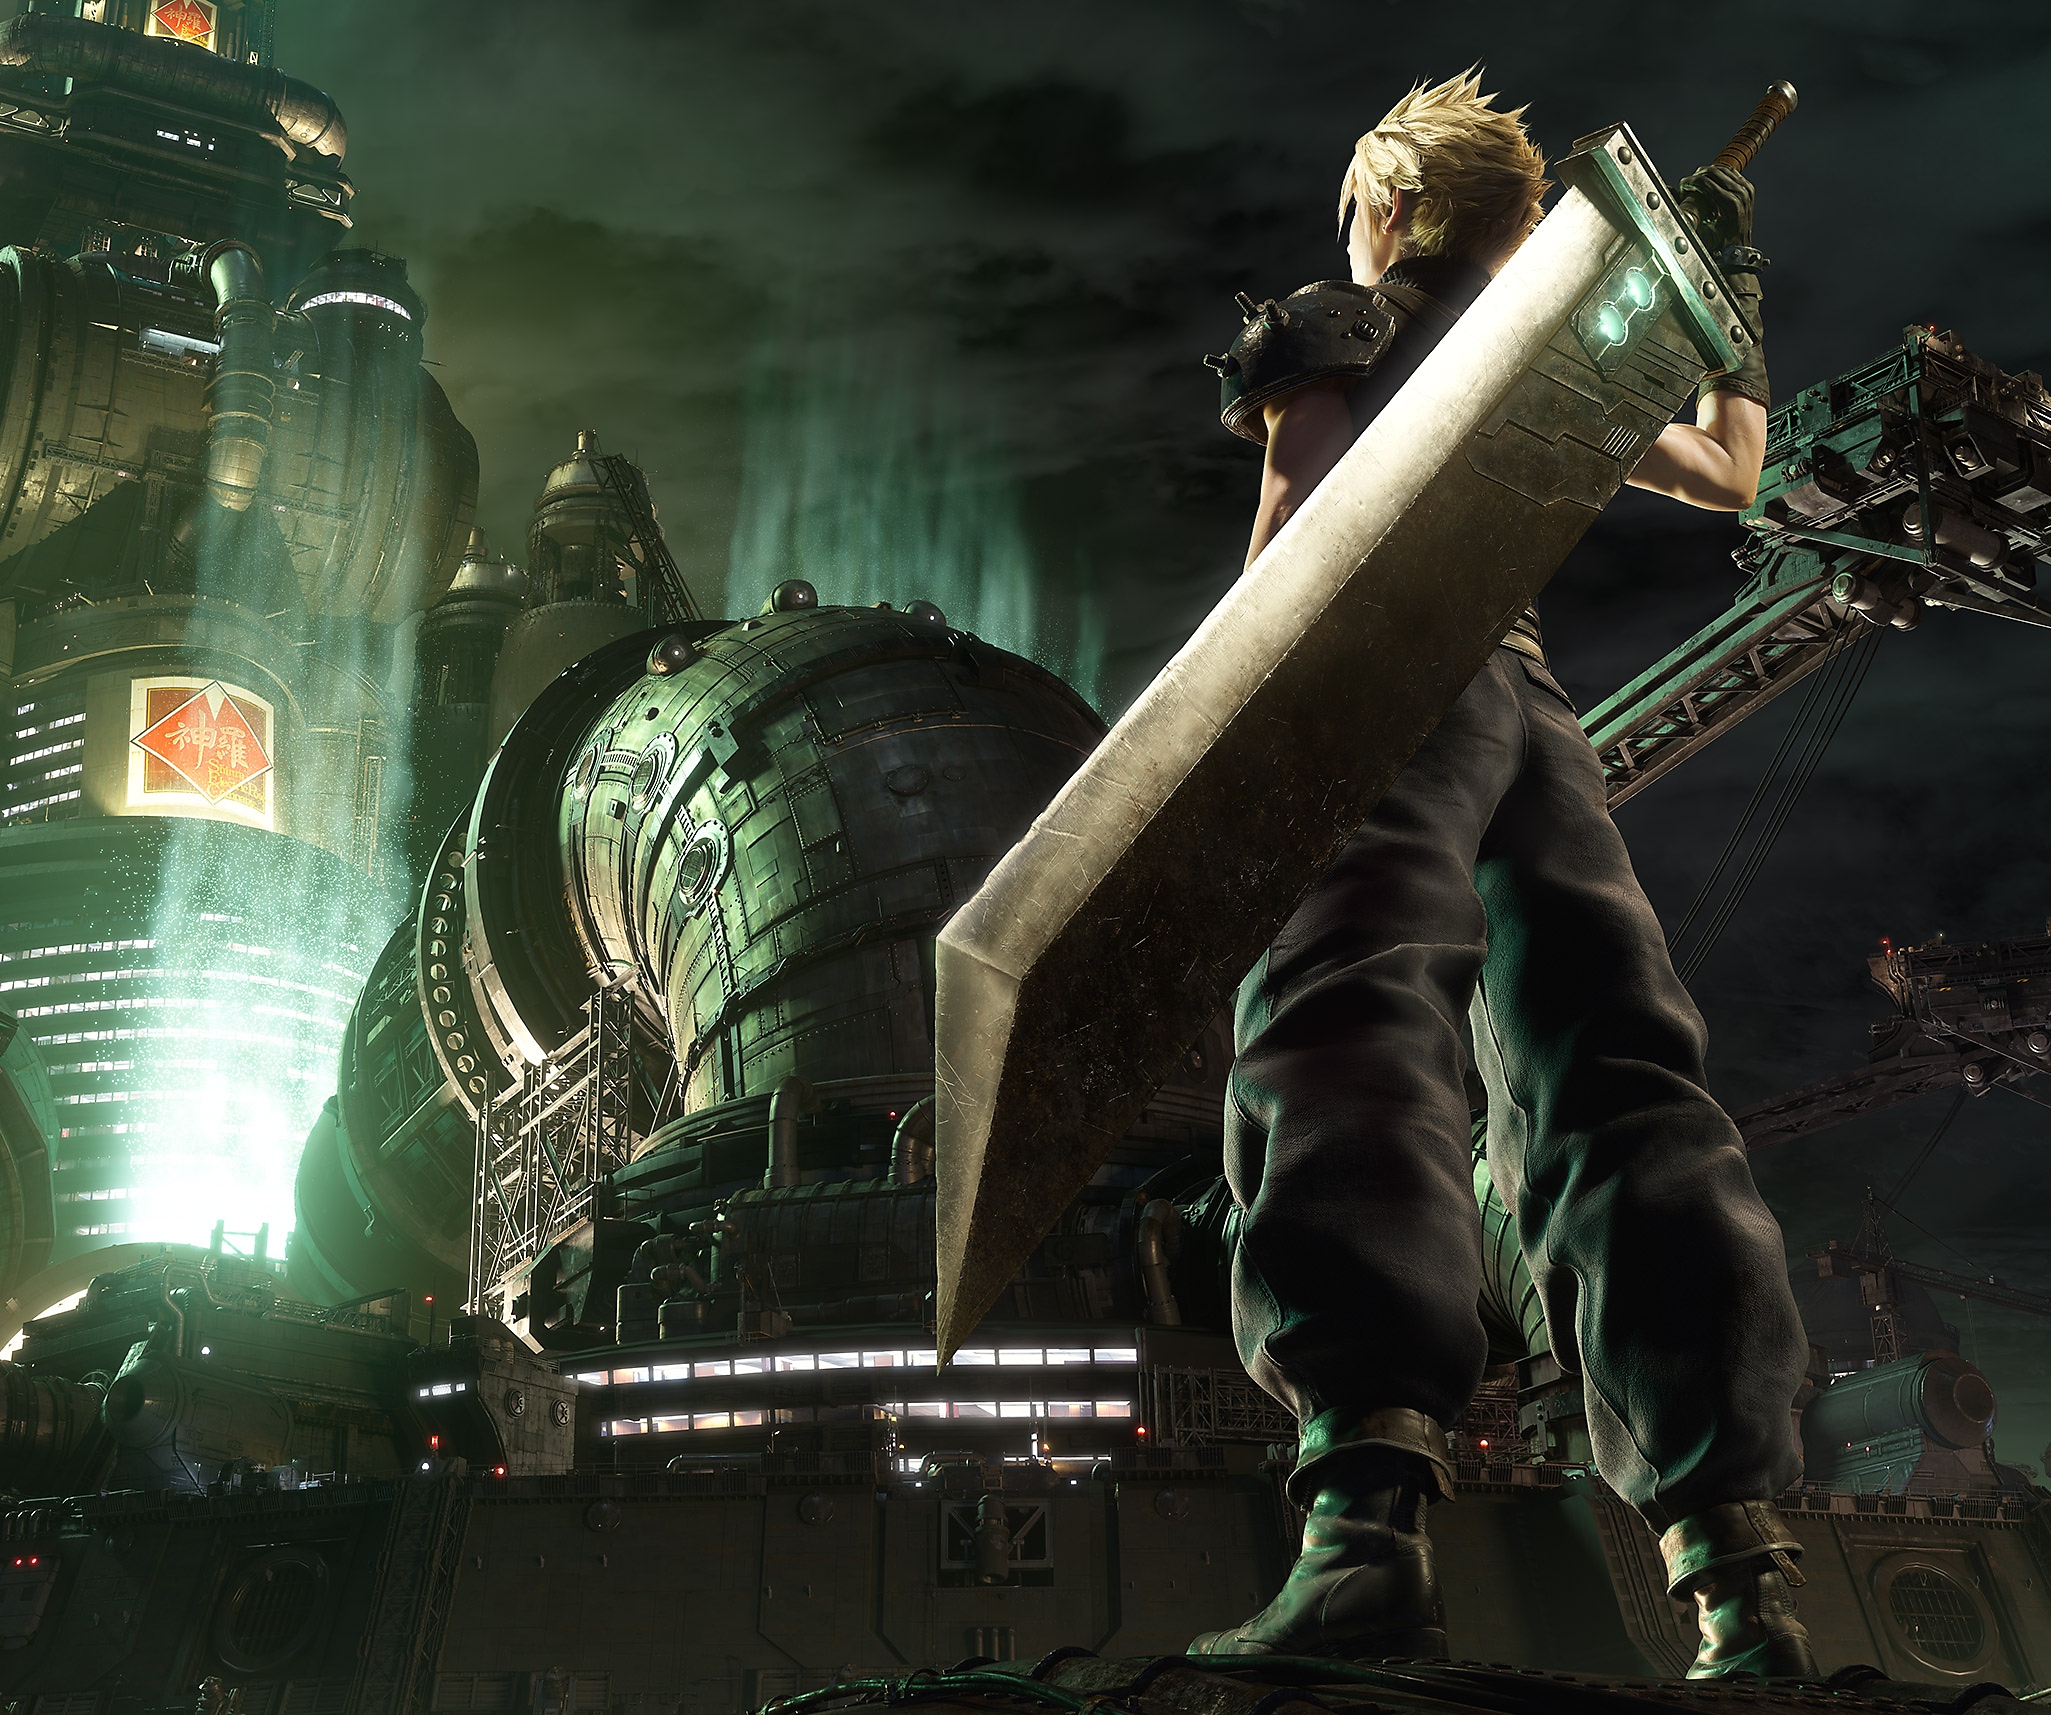 Immagine principale di Final Fantasy VII Remake che mostra il personaggio principale Cloud in piedi di fronte al quartier generale della Shinra.